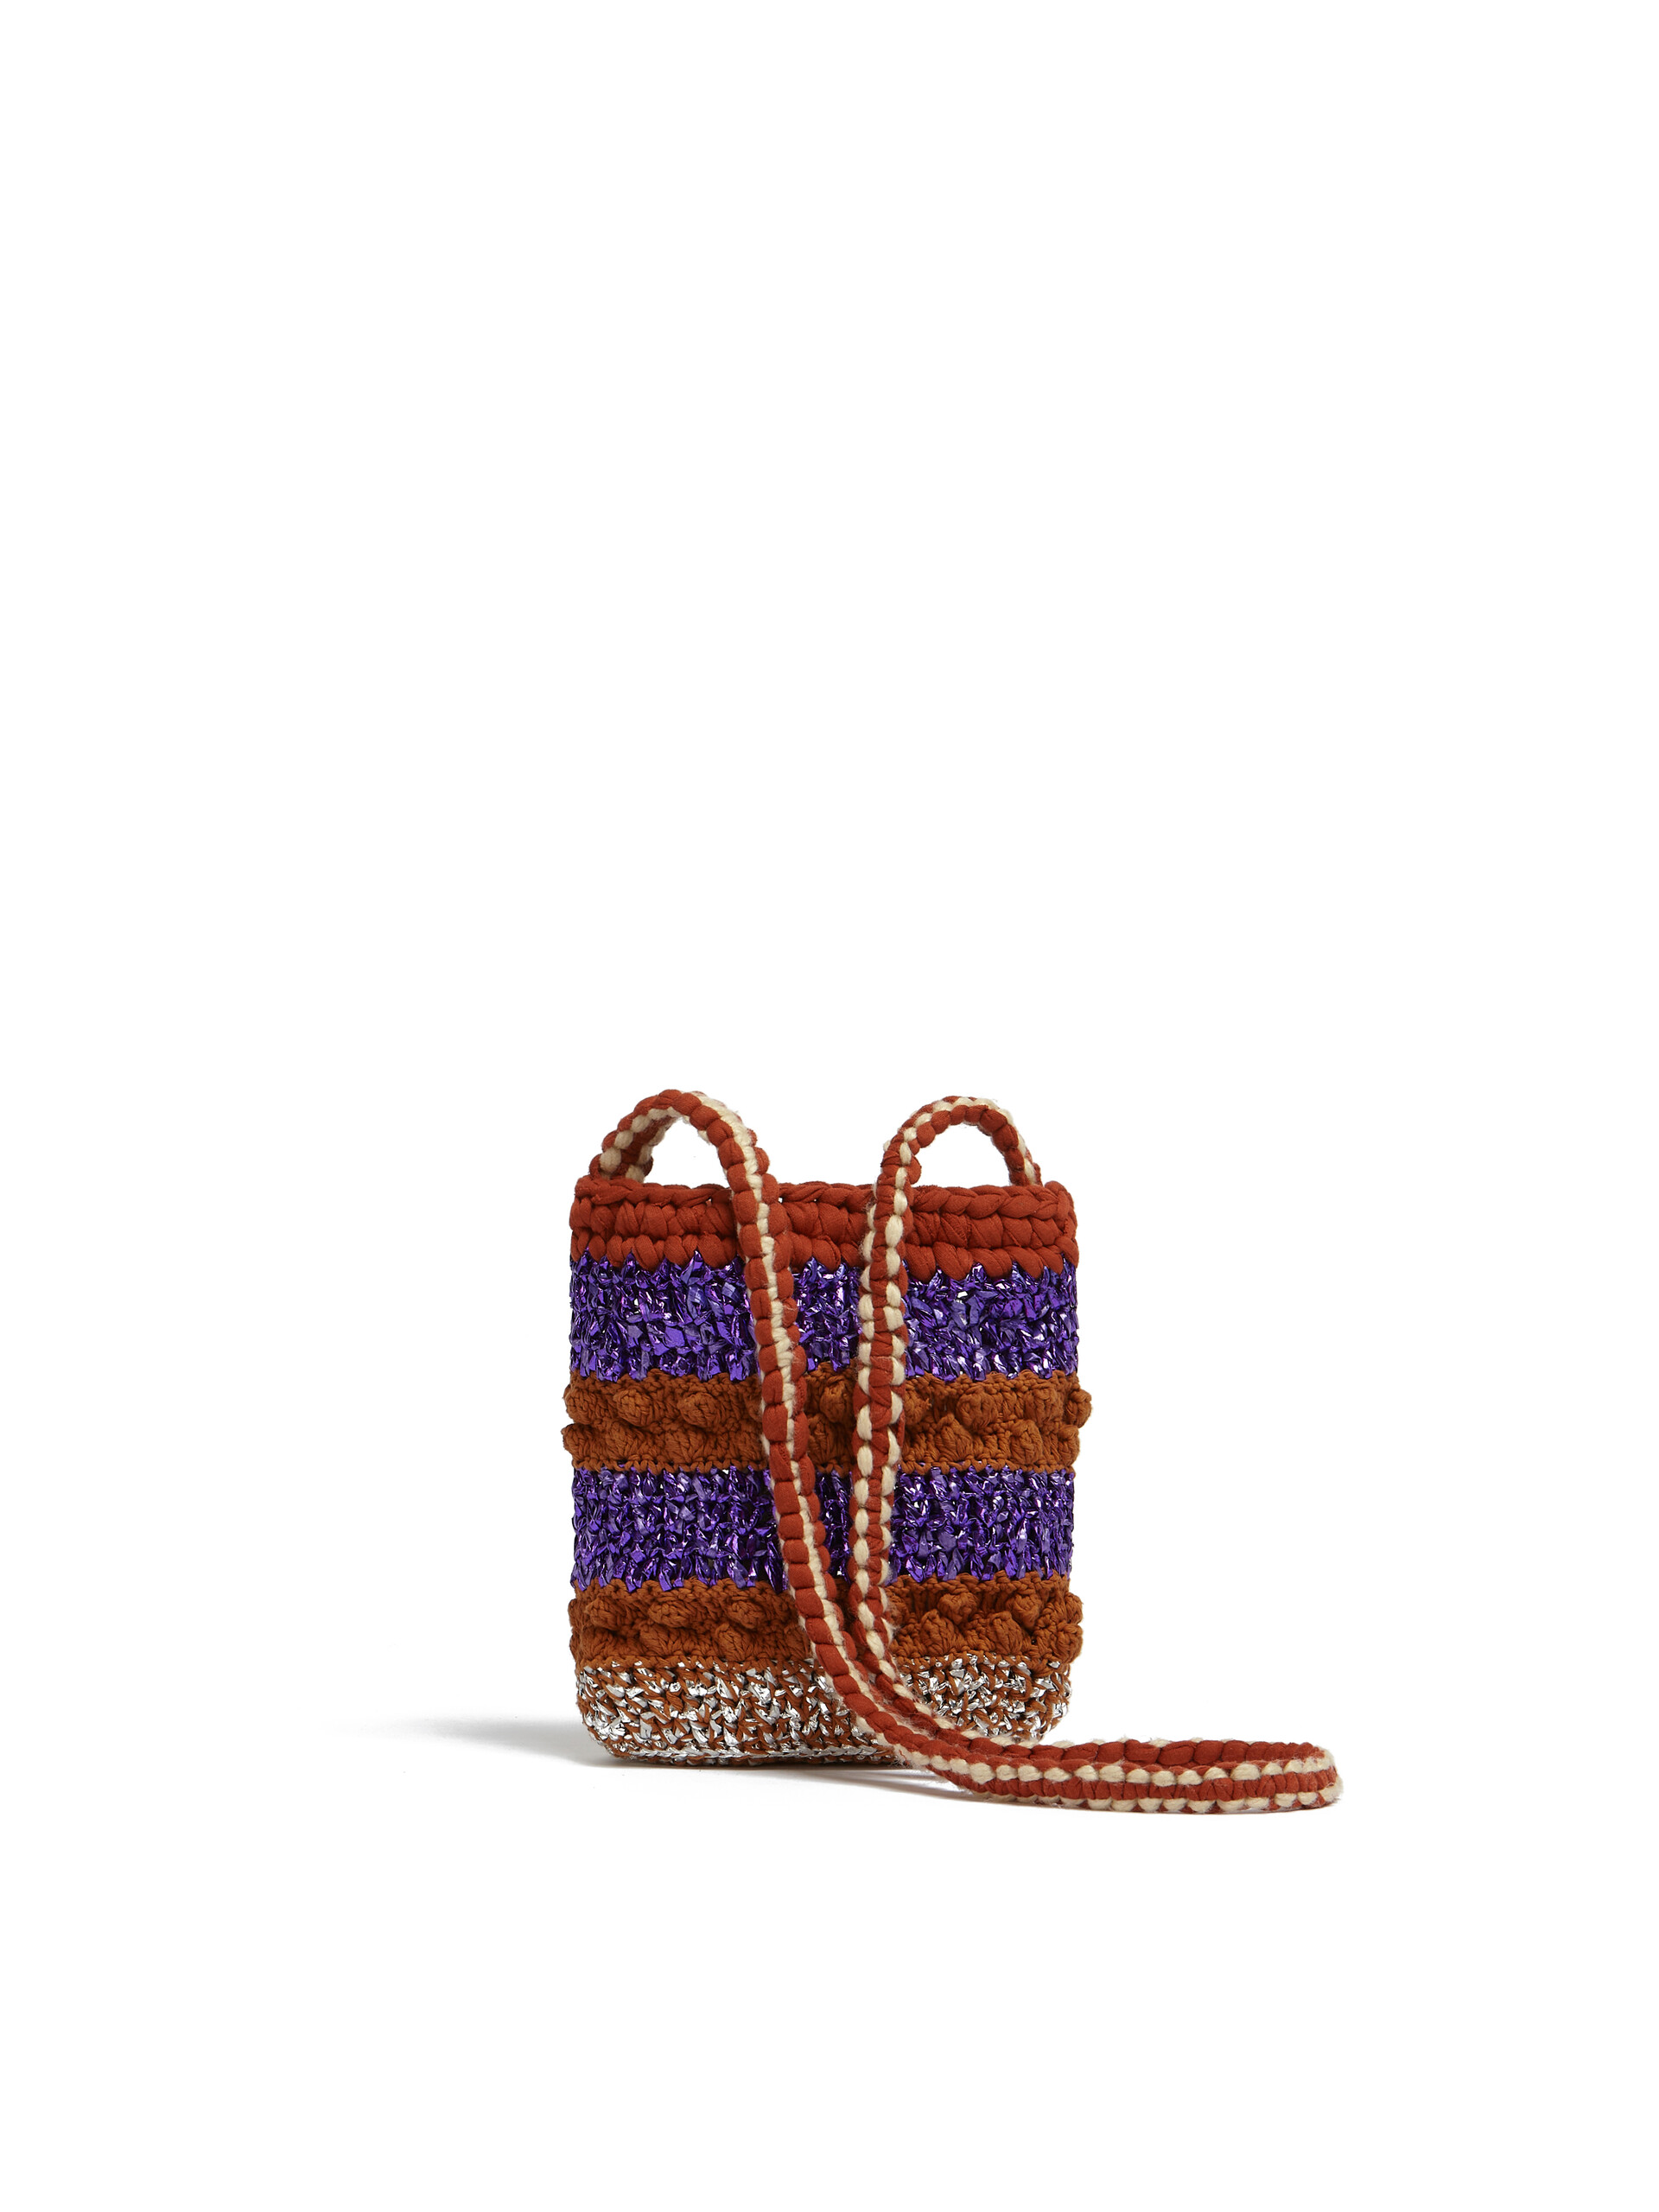 Borsa tracolla MARNI MARKET Mini in maglia a rilievo marrone e viola - Borse shopping - Image 3